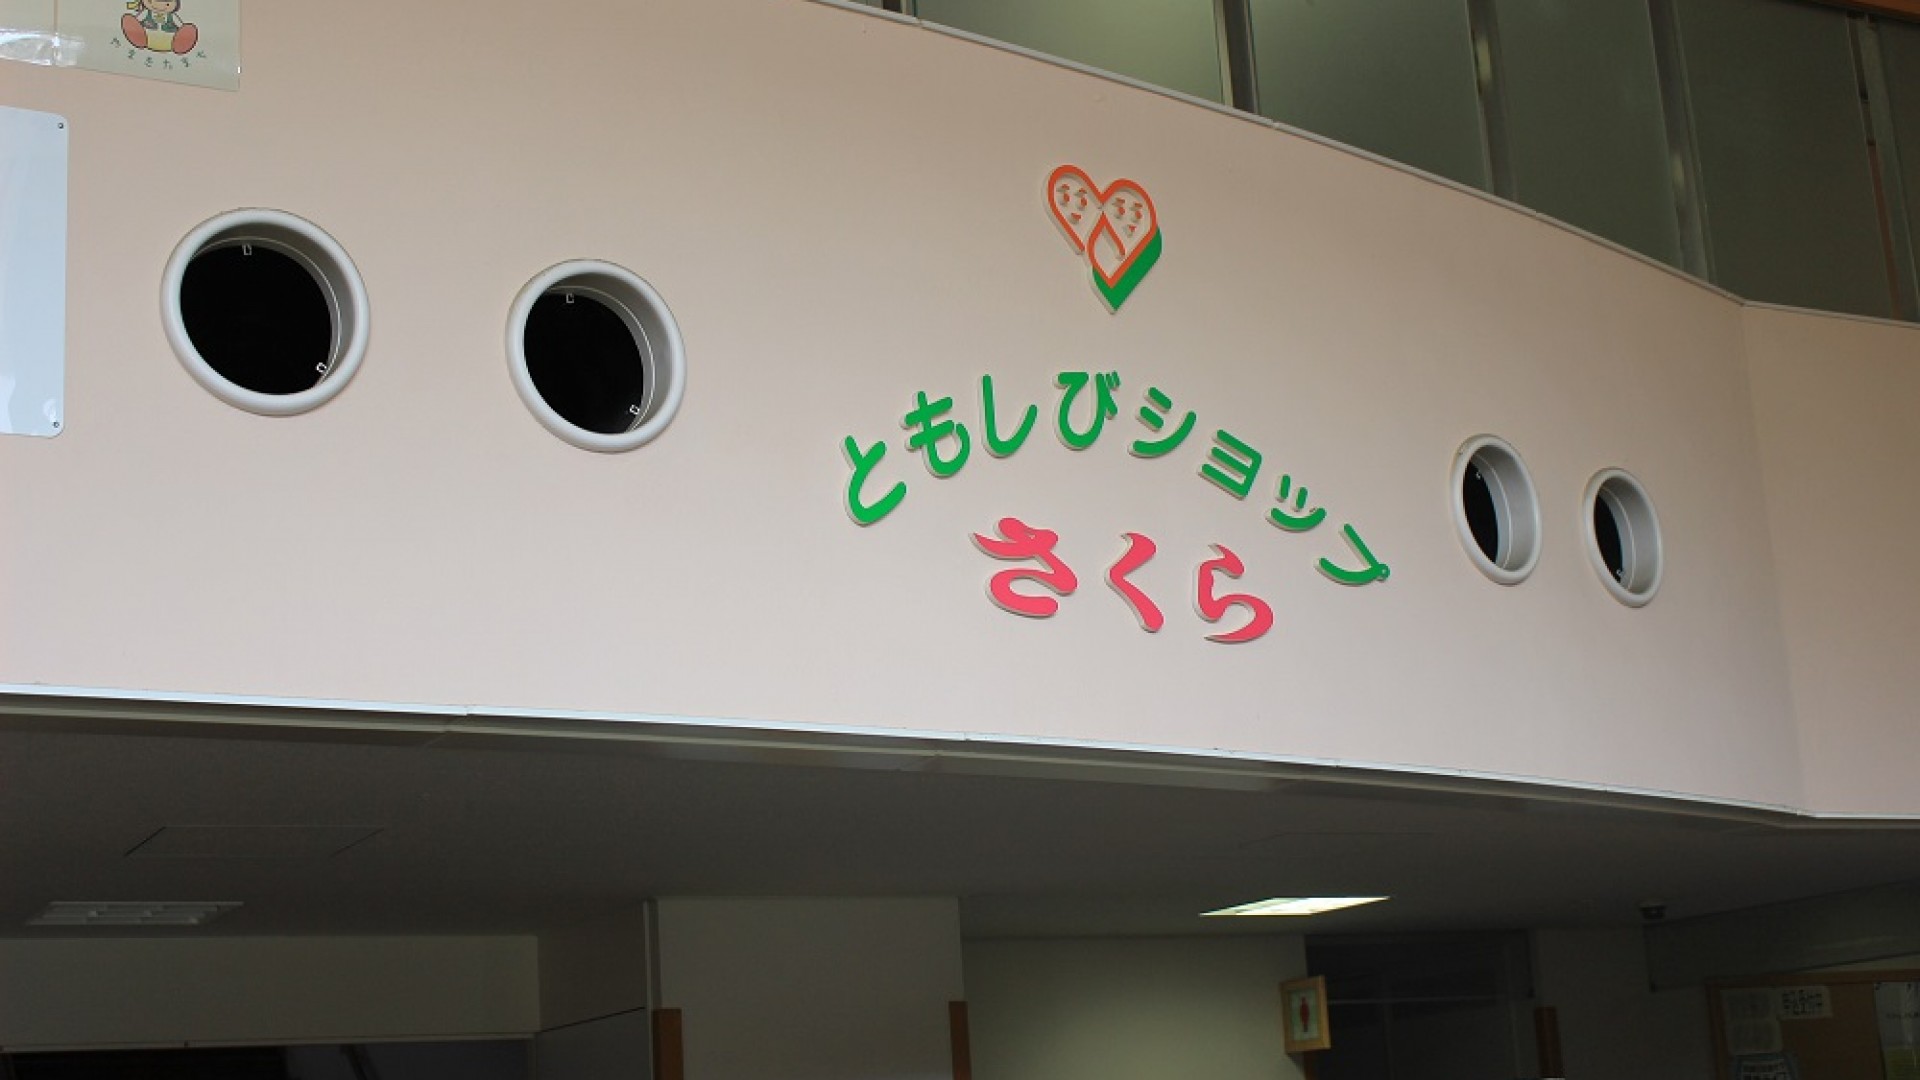 Yamakita-cho Gesundheit und Wohlbefinden Zentrum Tomoshibi Geschäft Sakura